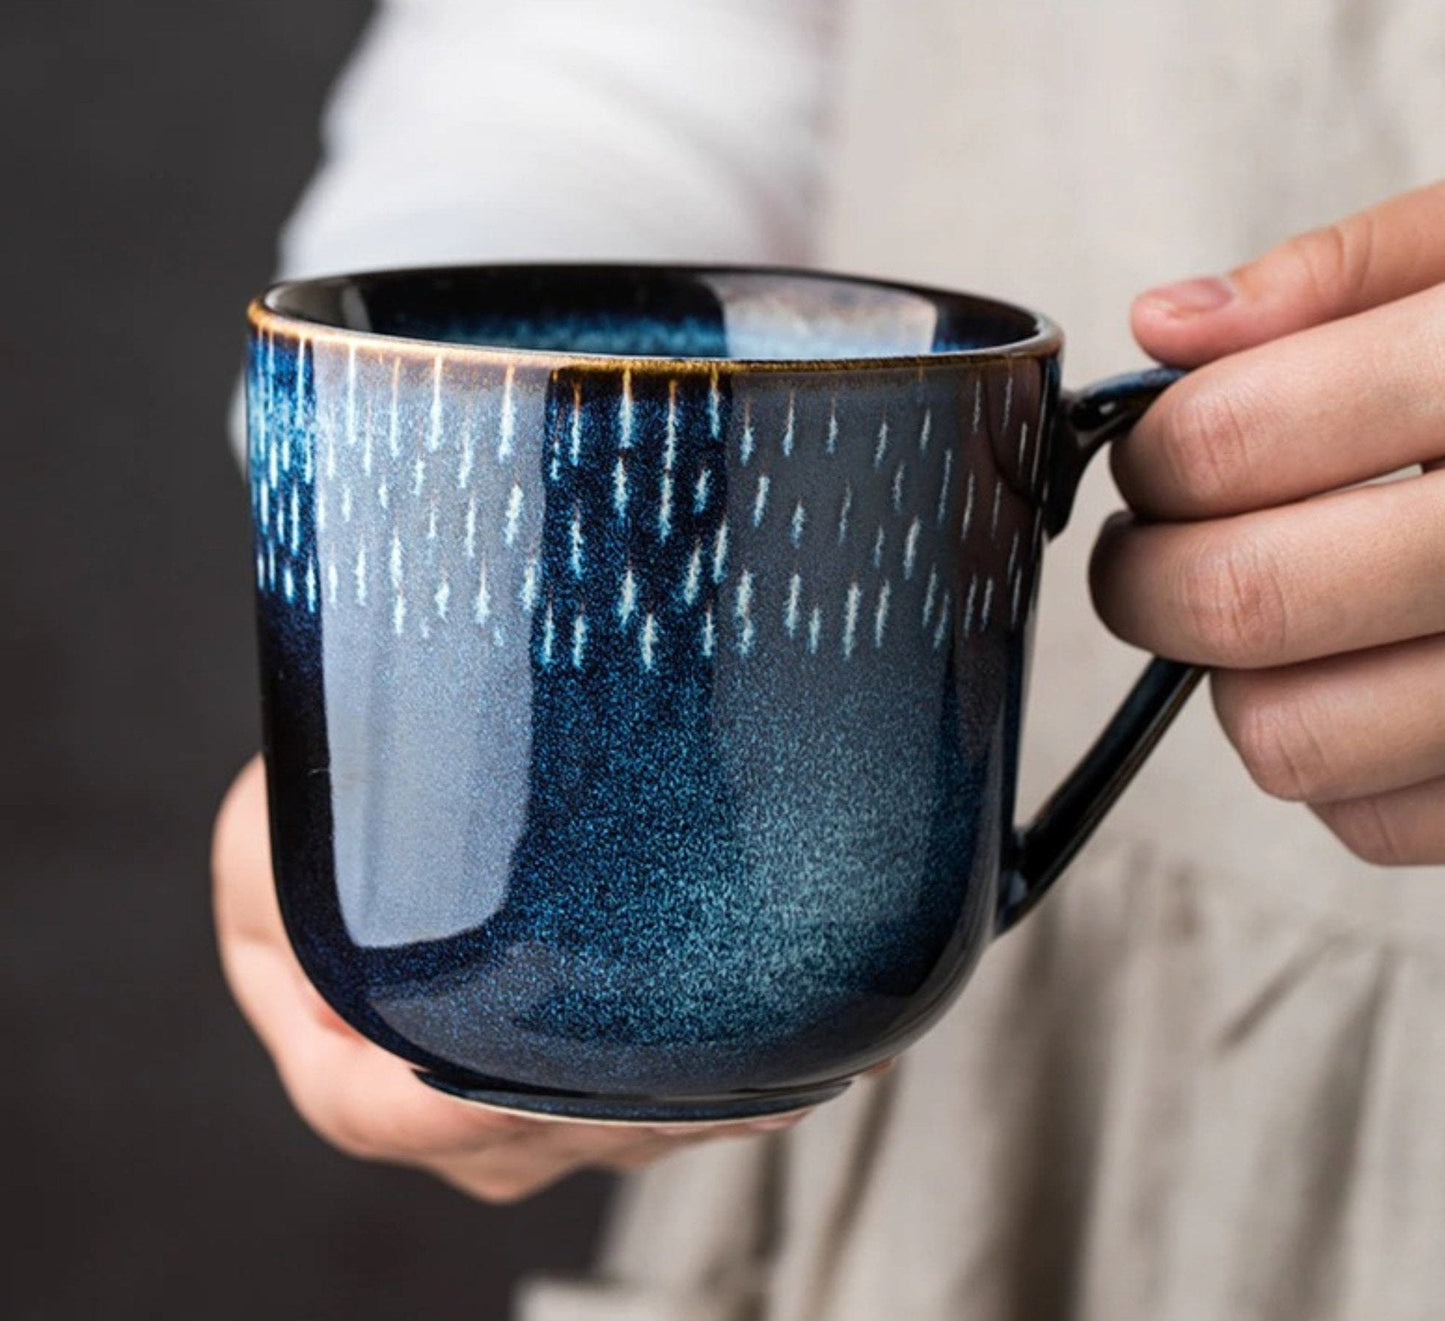 Ceramic Mug With Blue Glaze and White Lines 2x1 Set